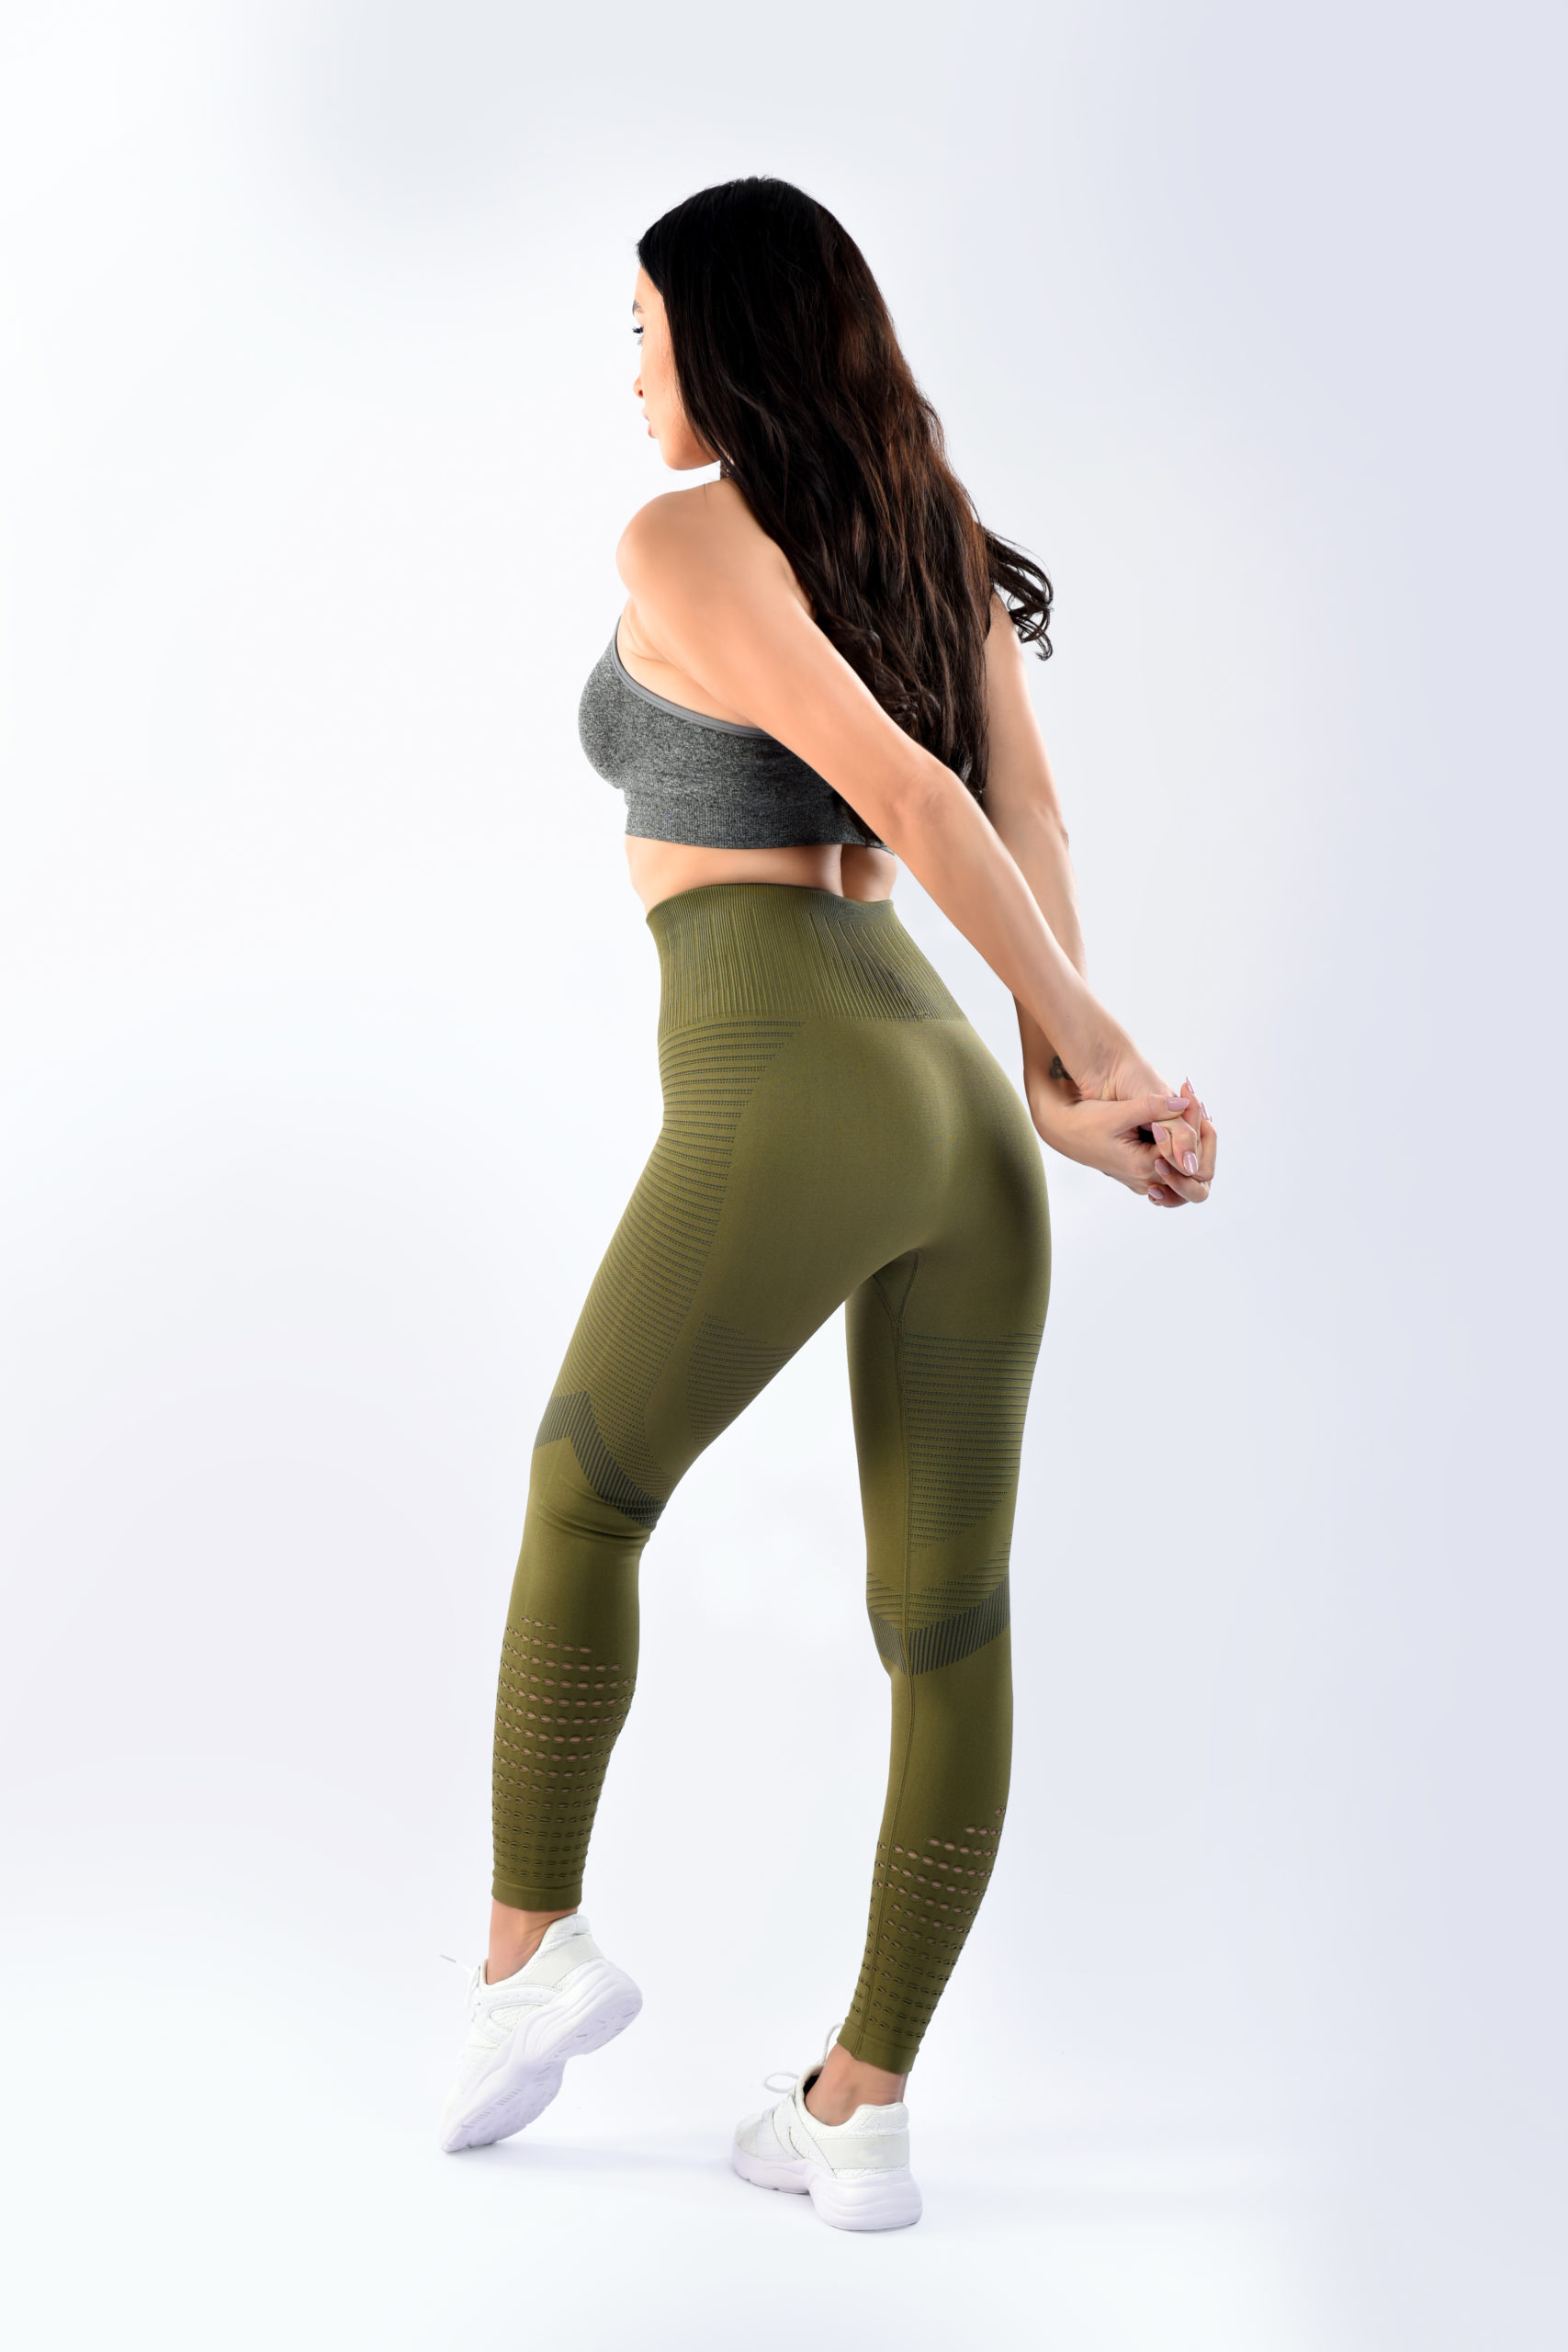 SIA Olive Leggings - TIYE the coolest sportswear & gym apparel